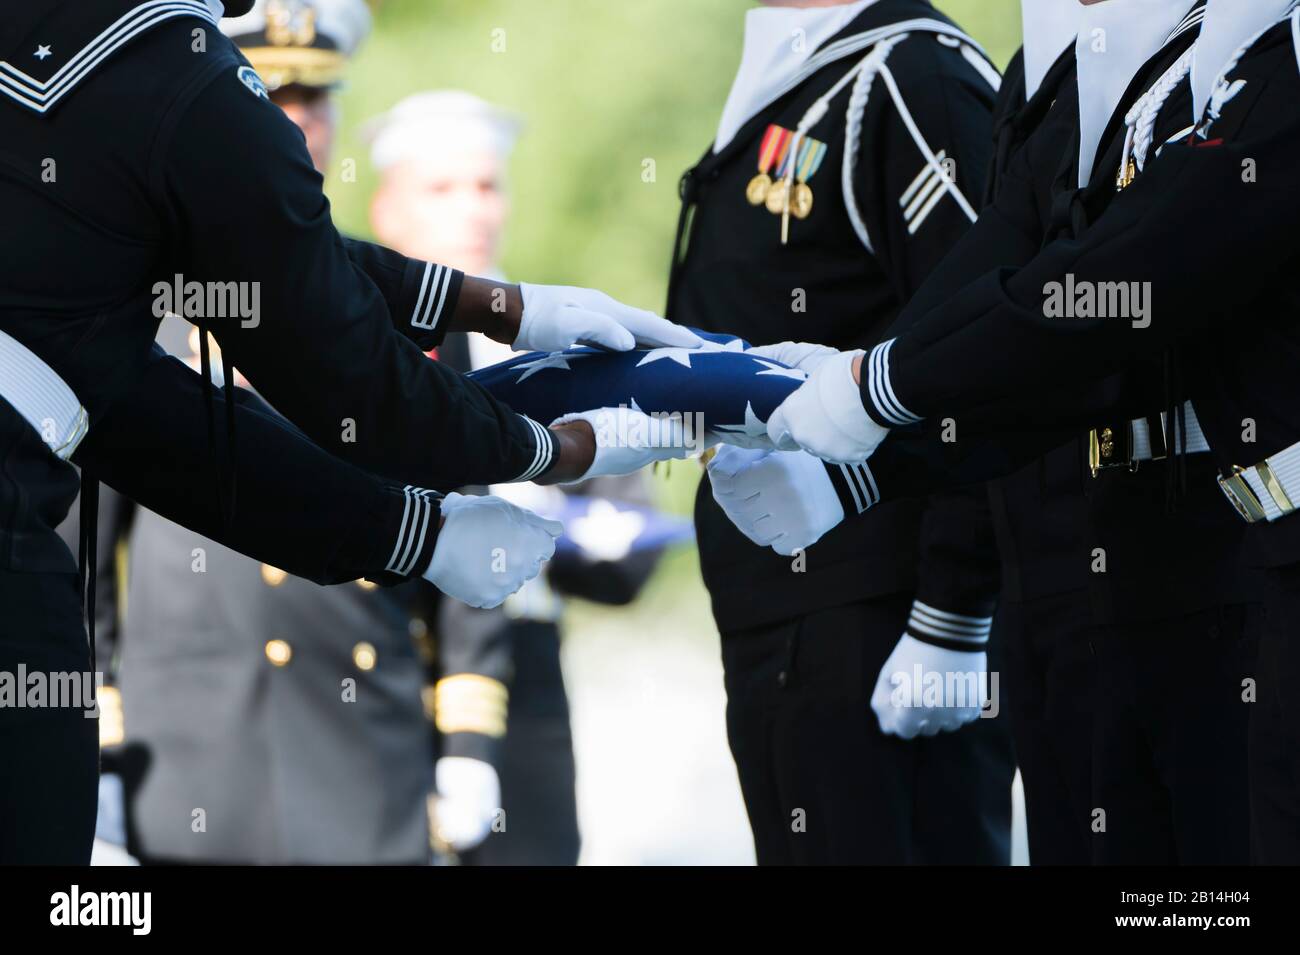 Estrictamente Melancolía Desarmado La Marina de los EE.UU. participa en la Guardia ceremonial junto a la tumba  de la Marina de los Estados Unidos servicio técnico electrónico de primera  clase, Kevin Sayer Bushell en la